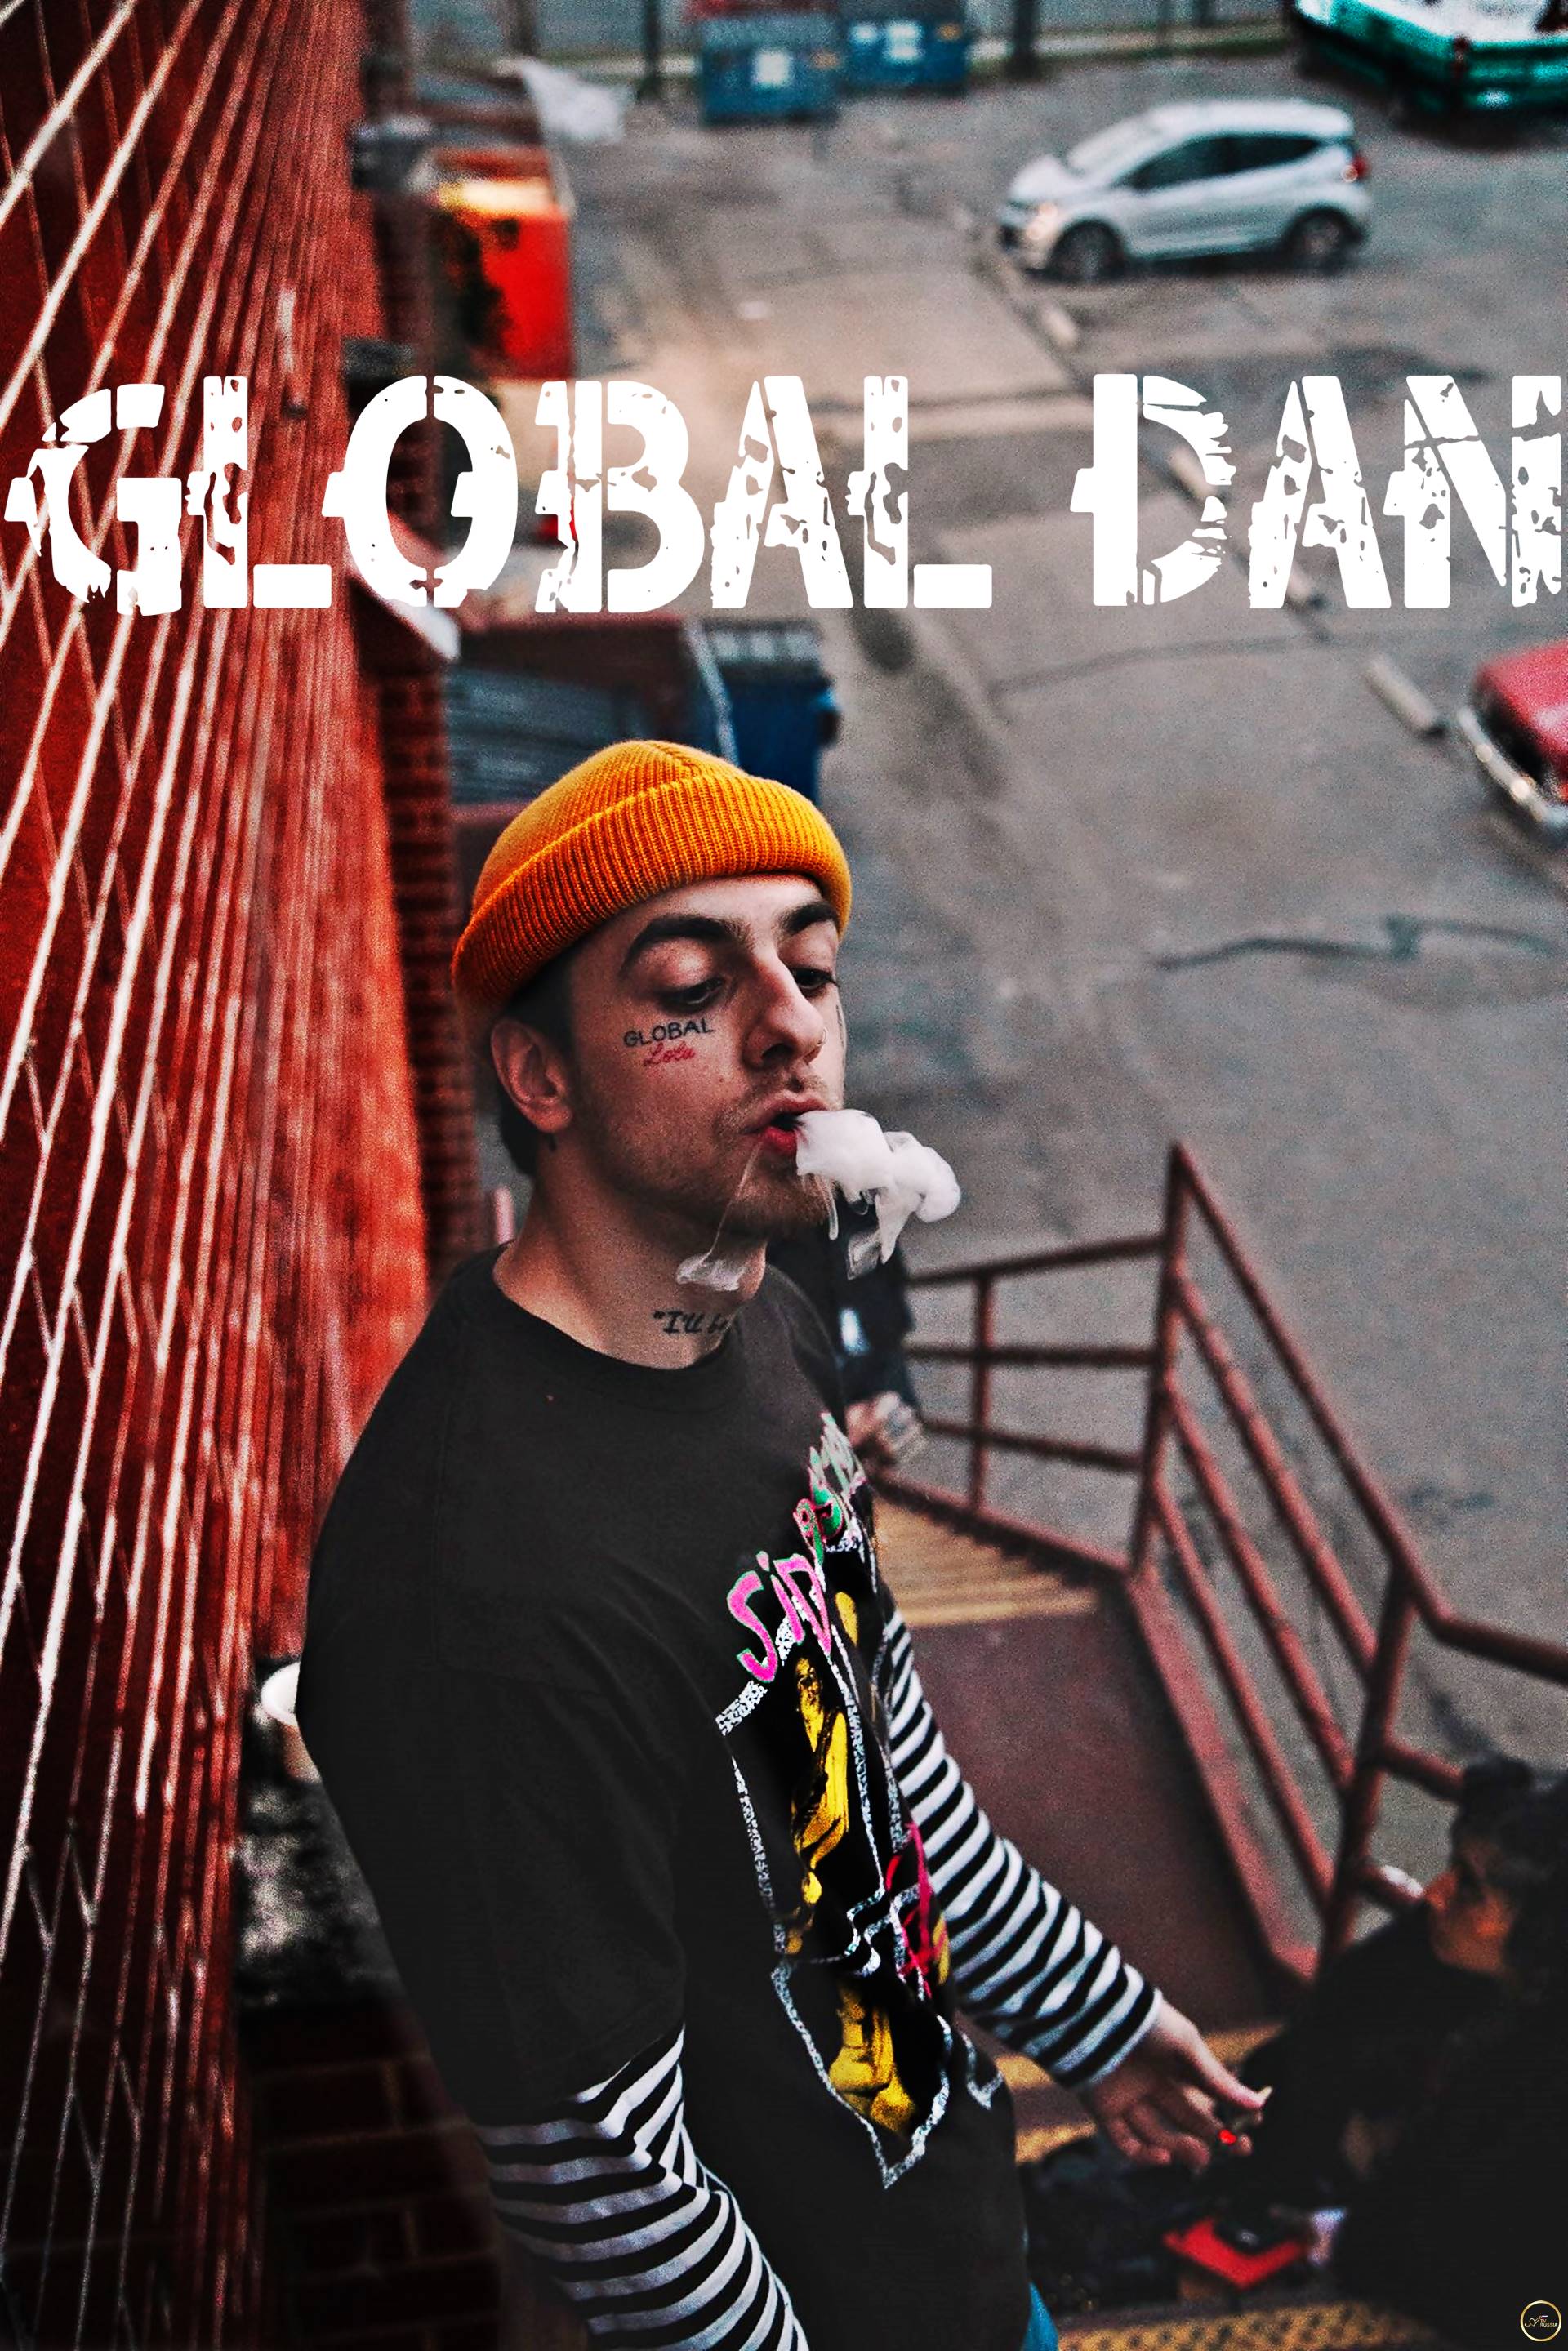 Global Dan